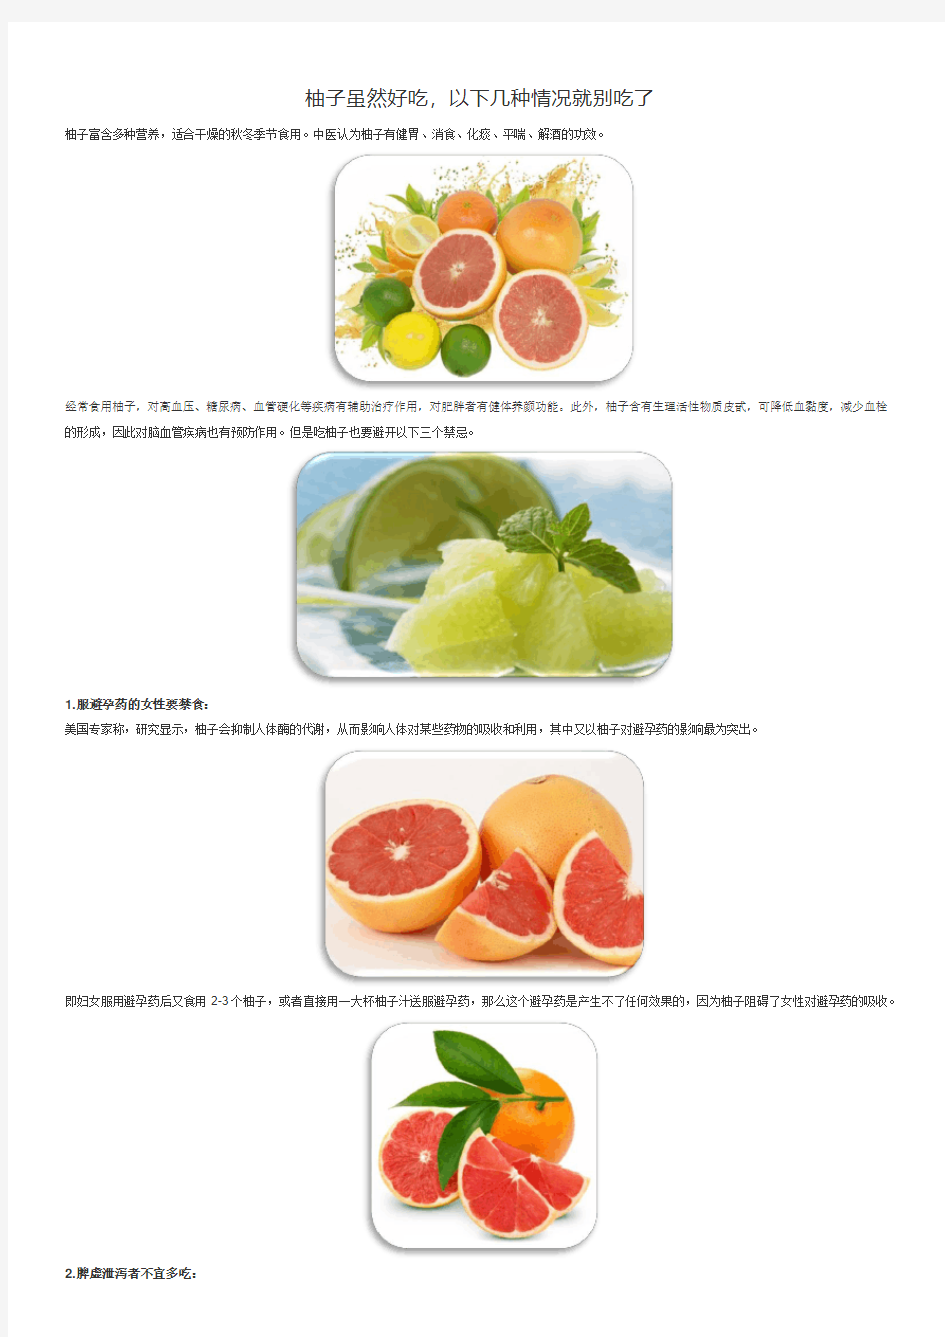 柚子虽然好吃,以下几种情况就别吃了